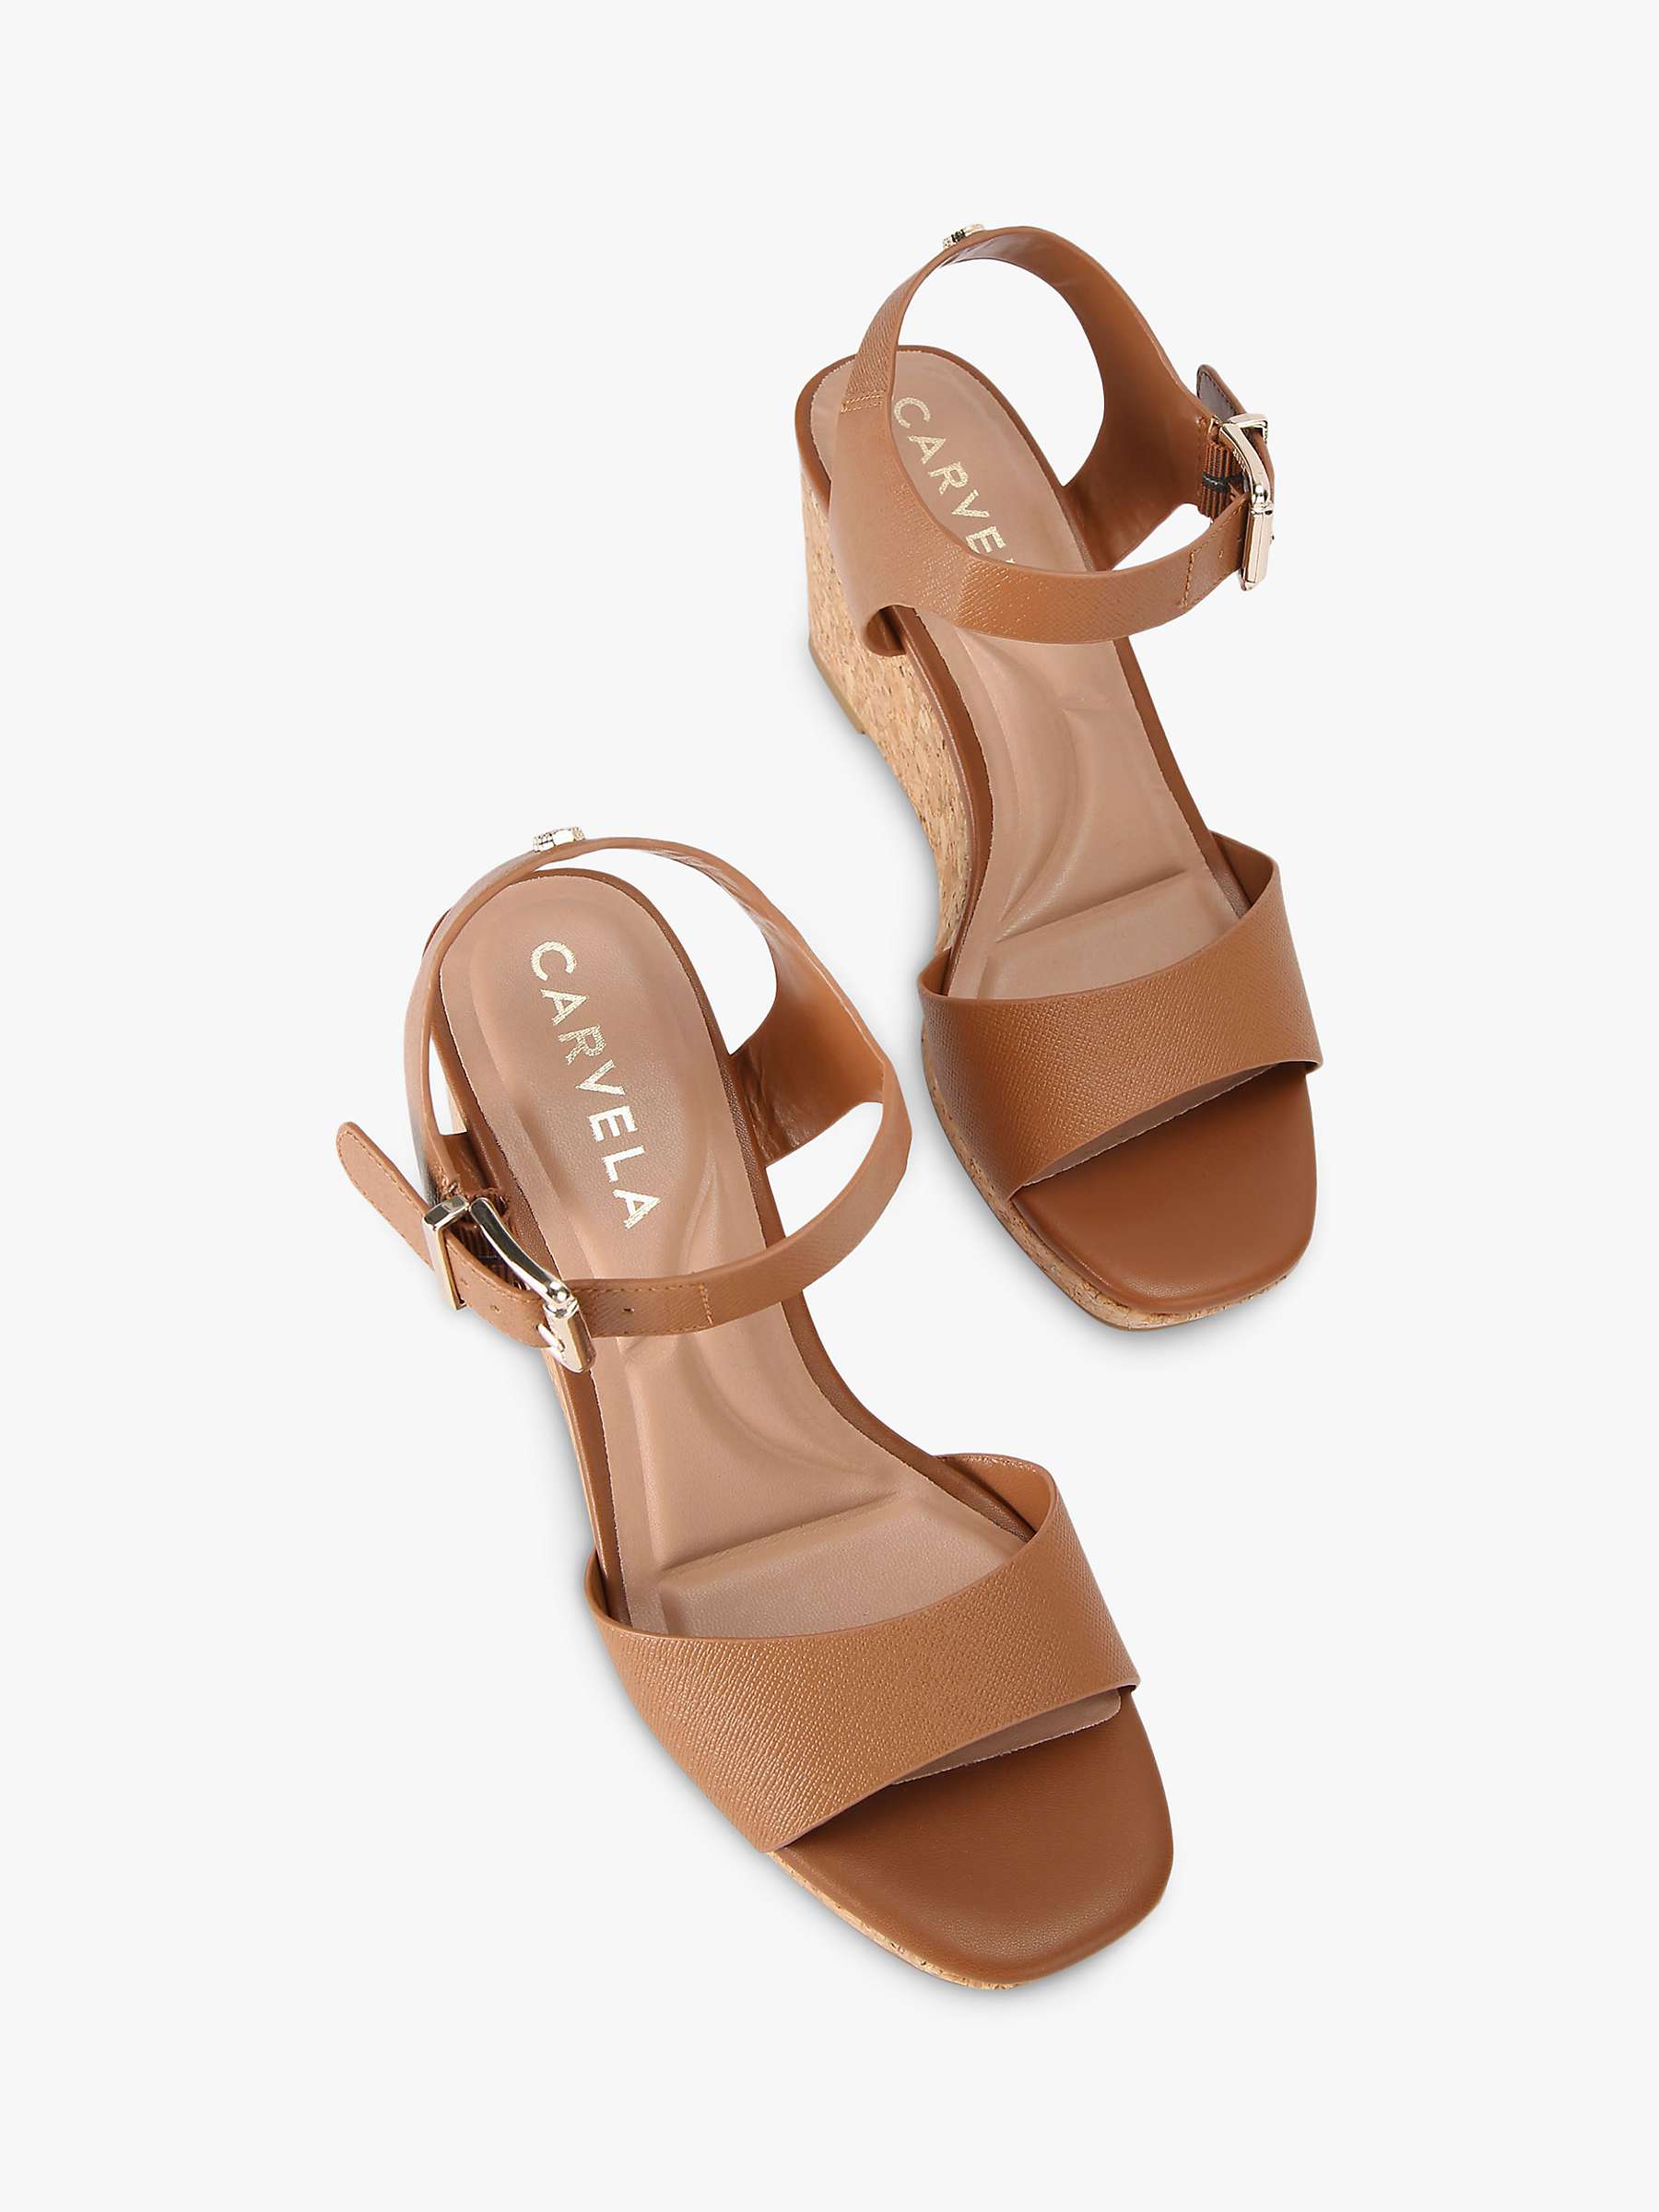 Buy Carvela Sadie Wedge Heel Sandals, Tan Online at johnlewis.com